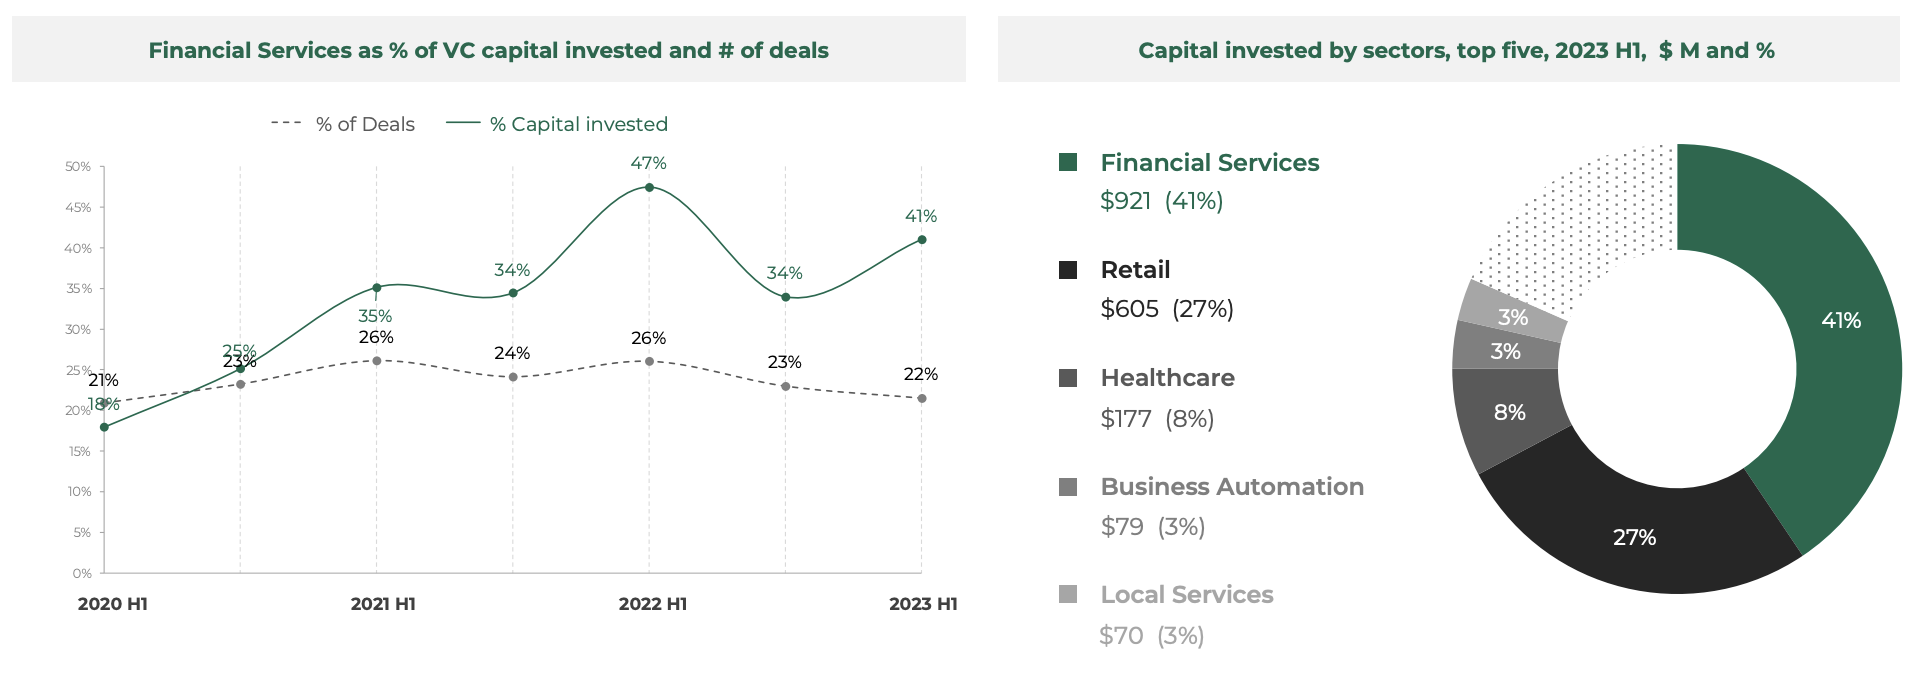 Частка фінансових послуг як % інвестованого венчурного капіталу та кількість угод, Джерело: Southeast Asia Tech Investment 2023 H1, Cento Ventures, грудень 2023 р.